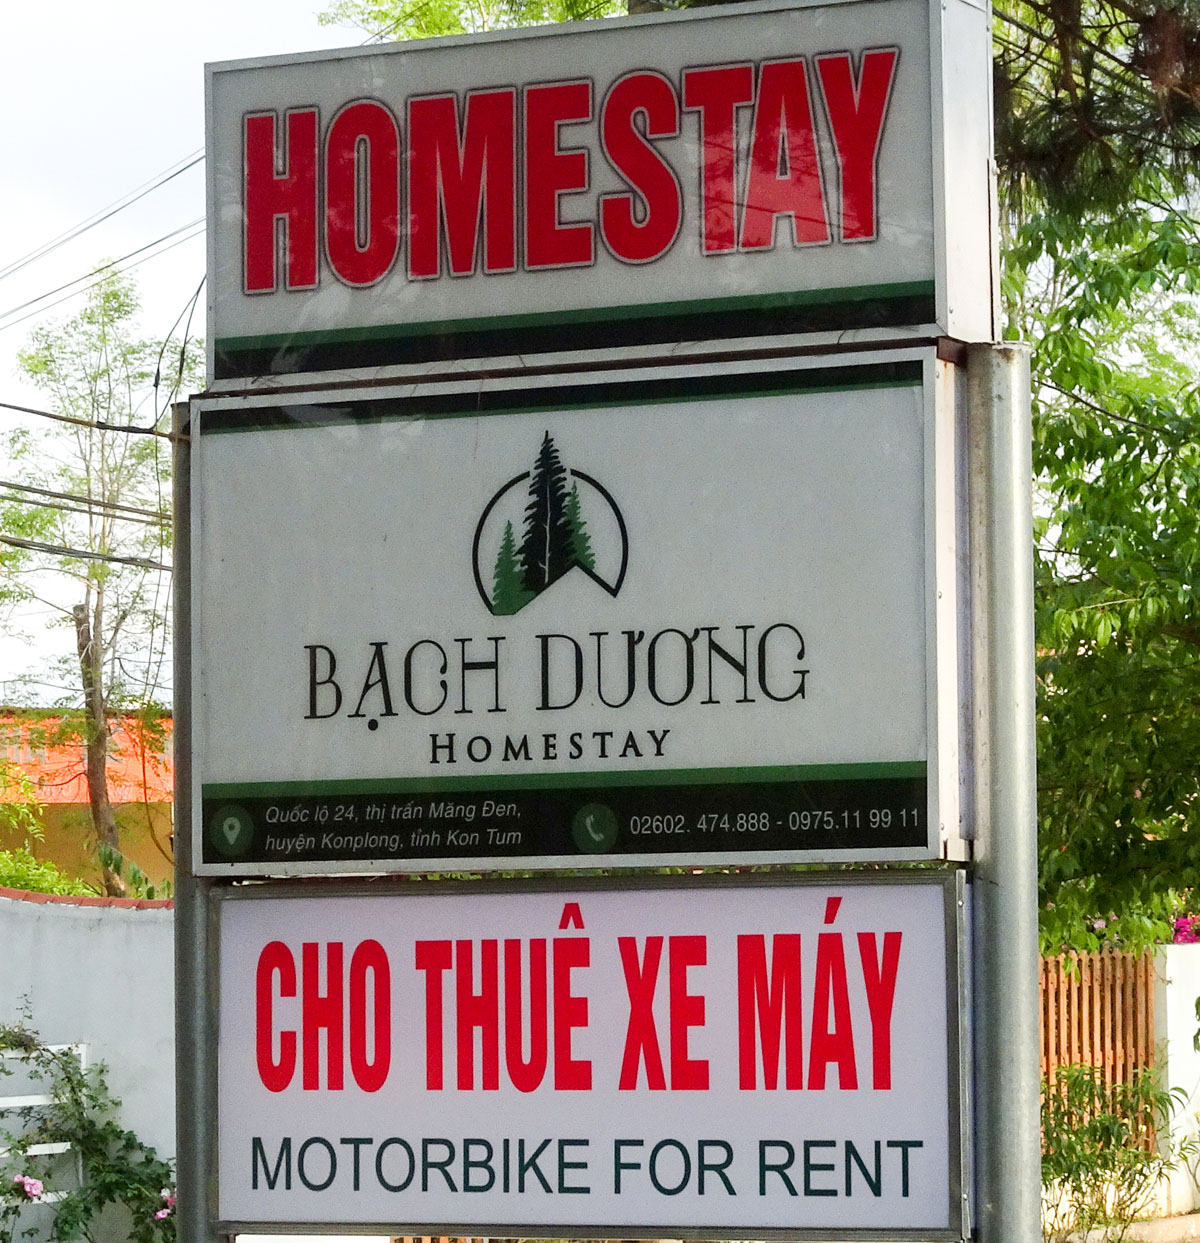 Homesay Ánh Dương | Cho thuê xe máy Măng Đen, Motorbike For Rent